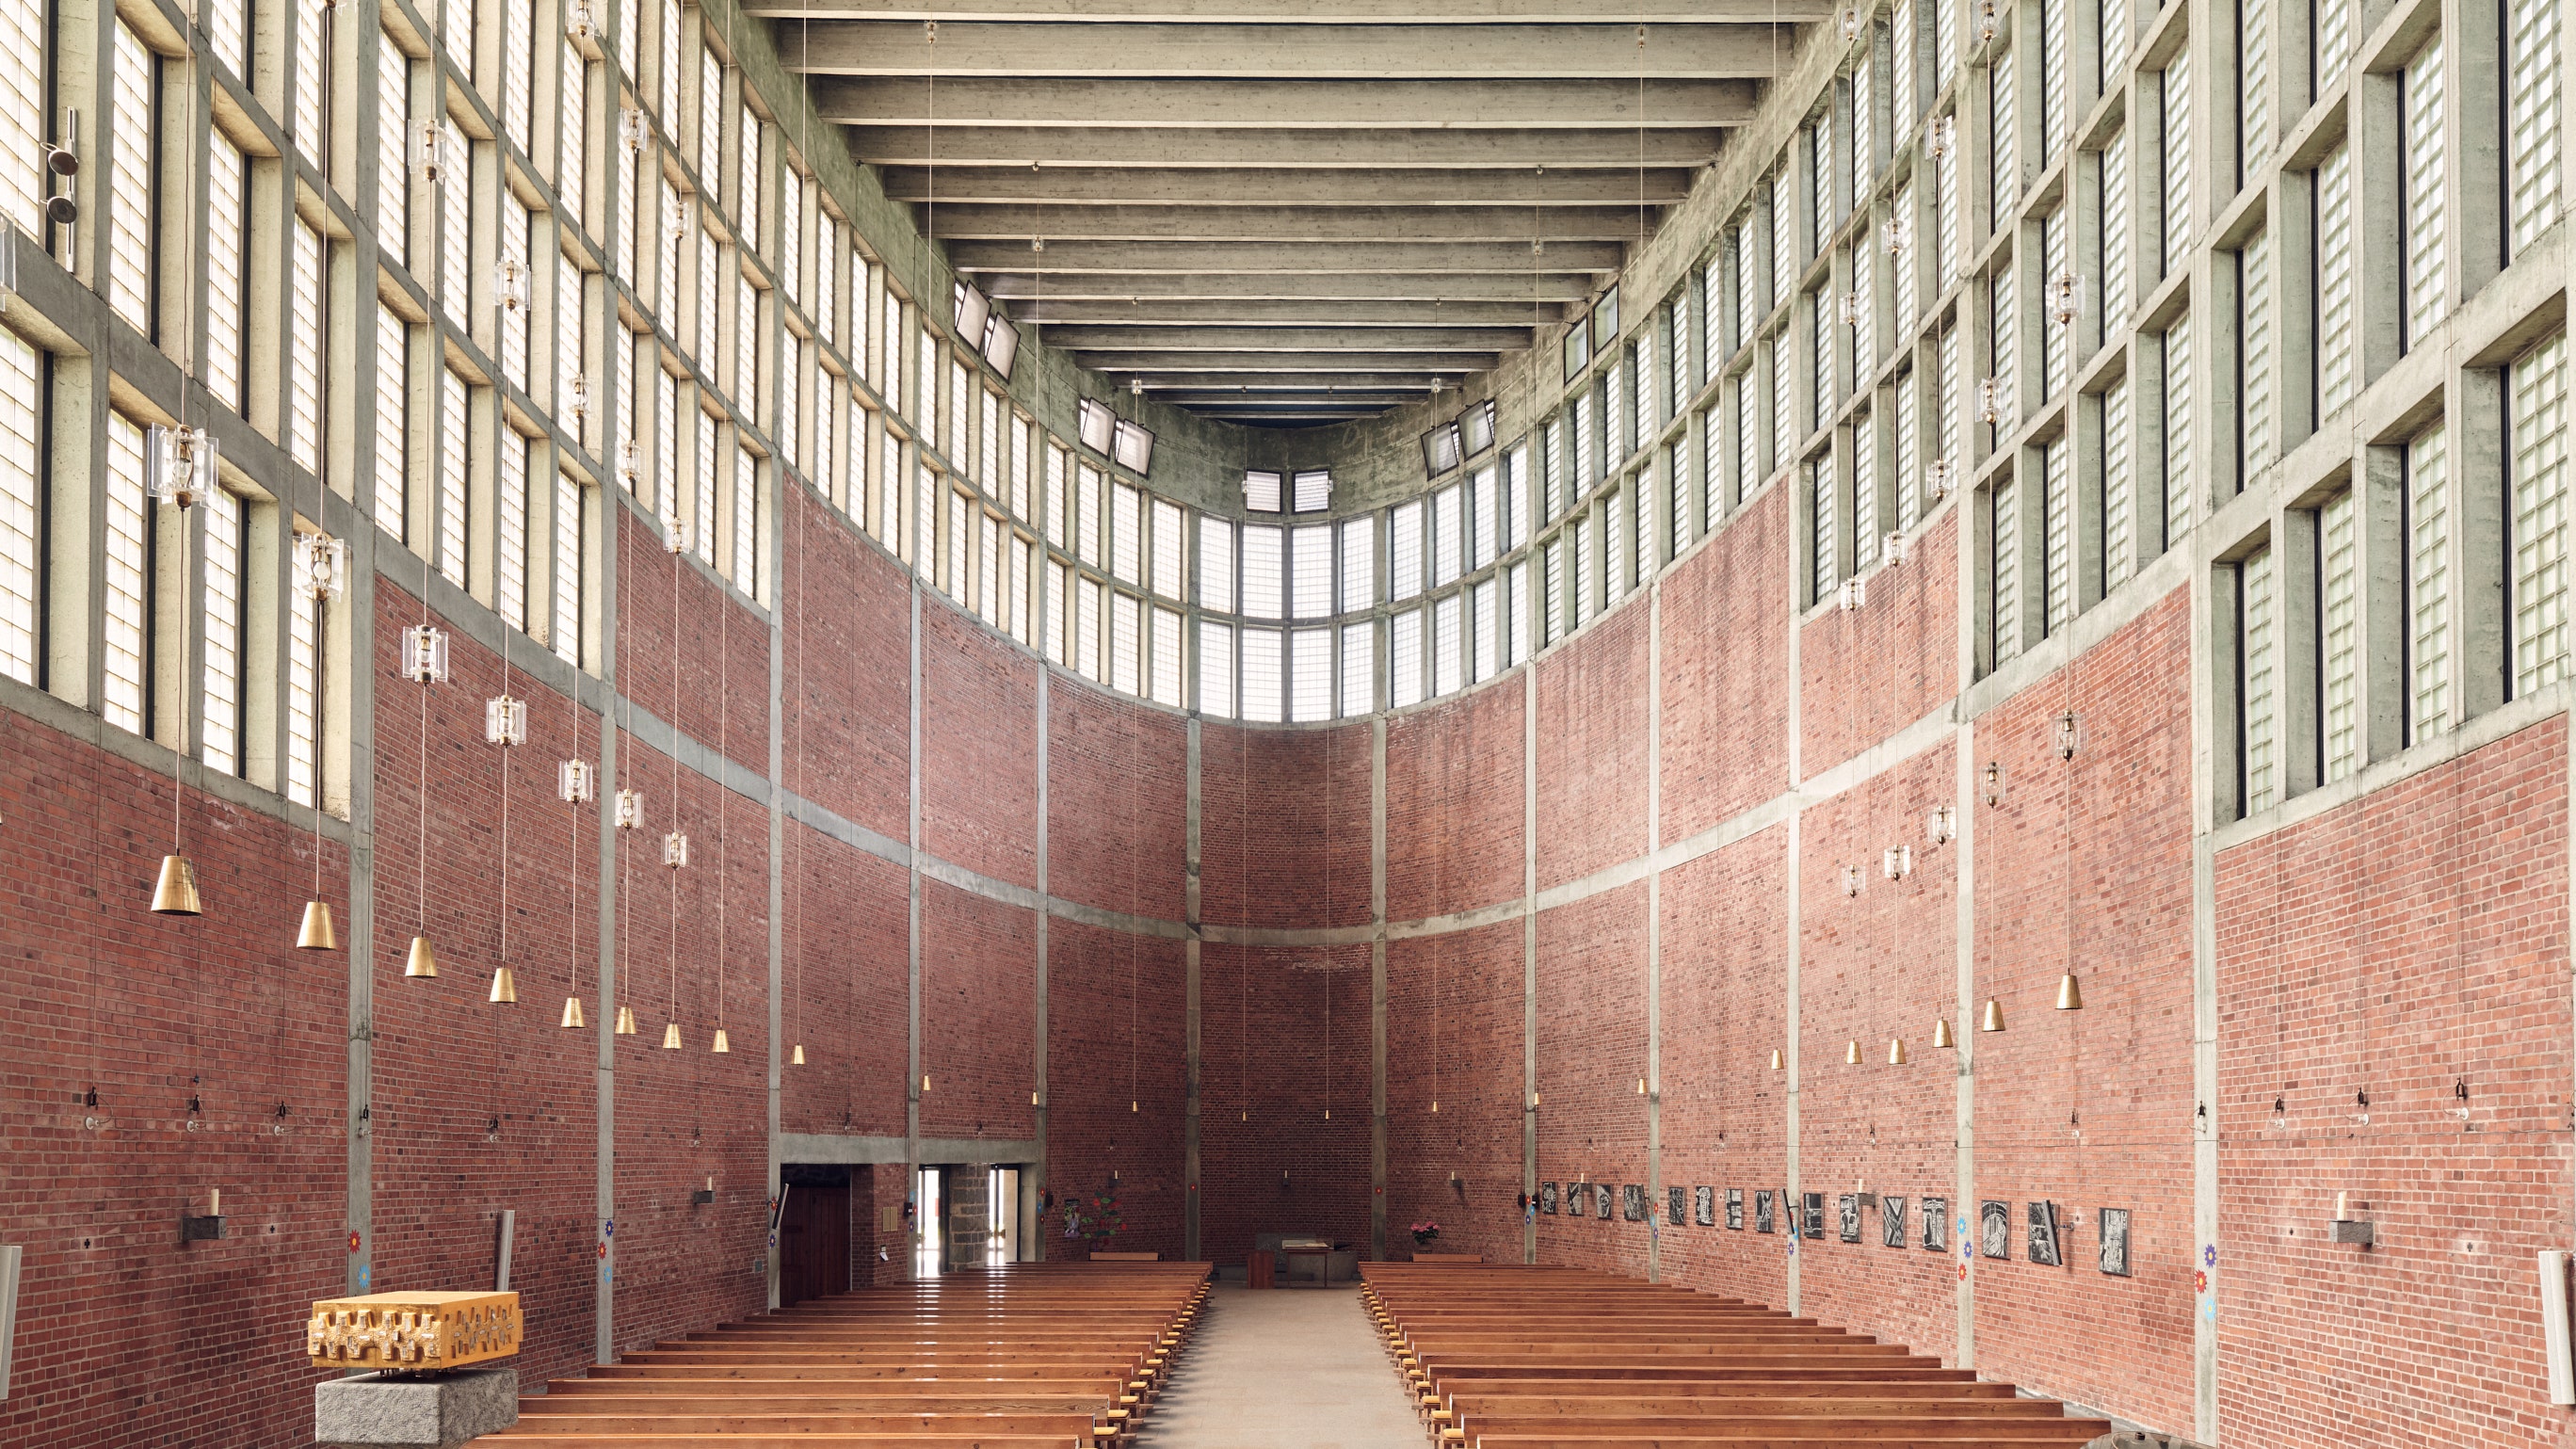 heilige hallen: brutalistische architektur in der kirche